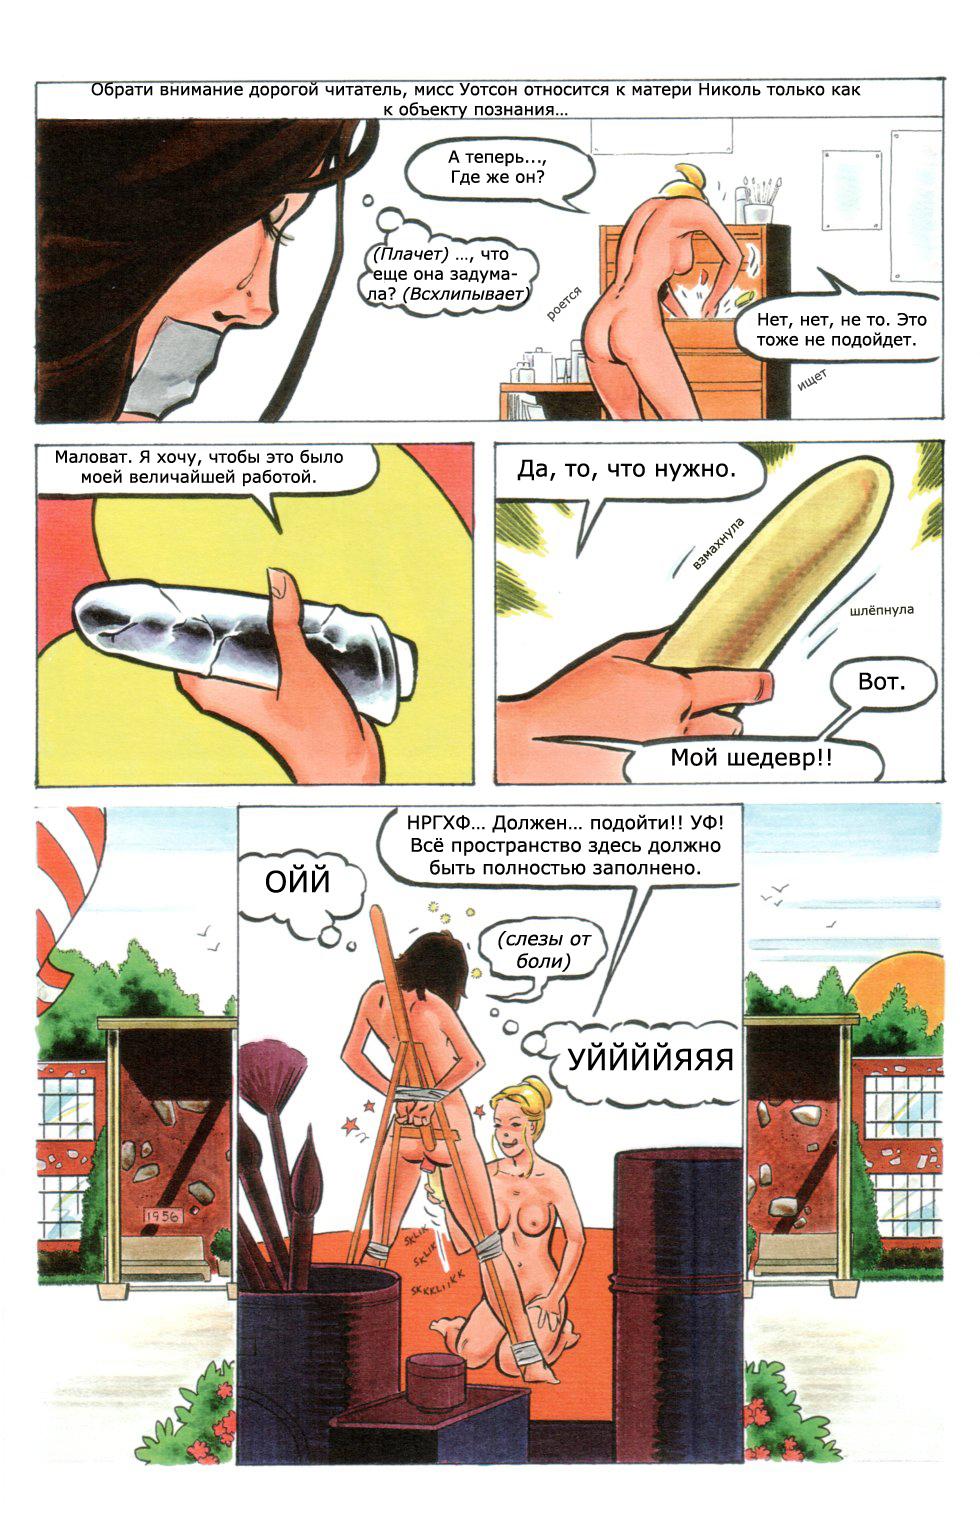 Порно комикс игры домохозяек фото 106